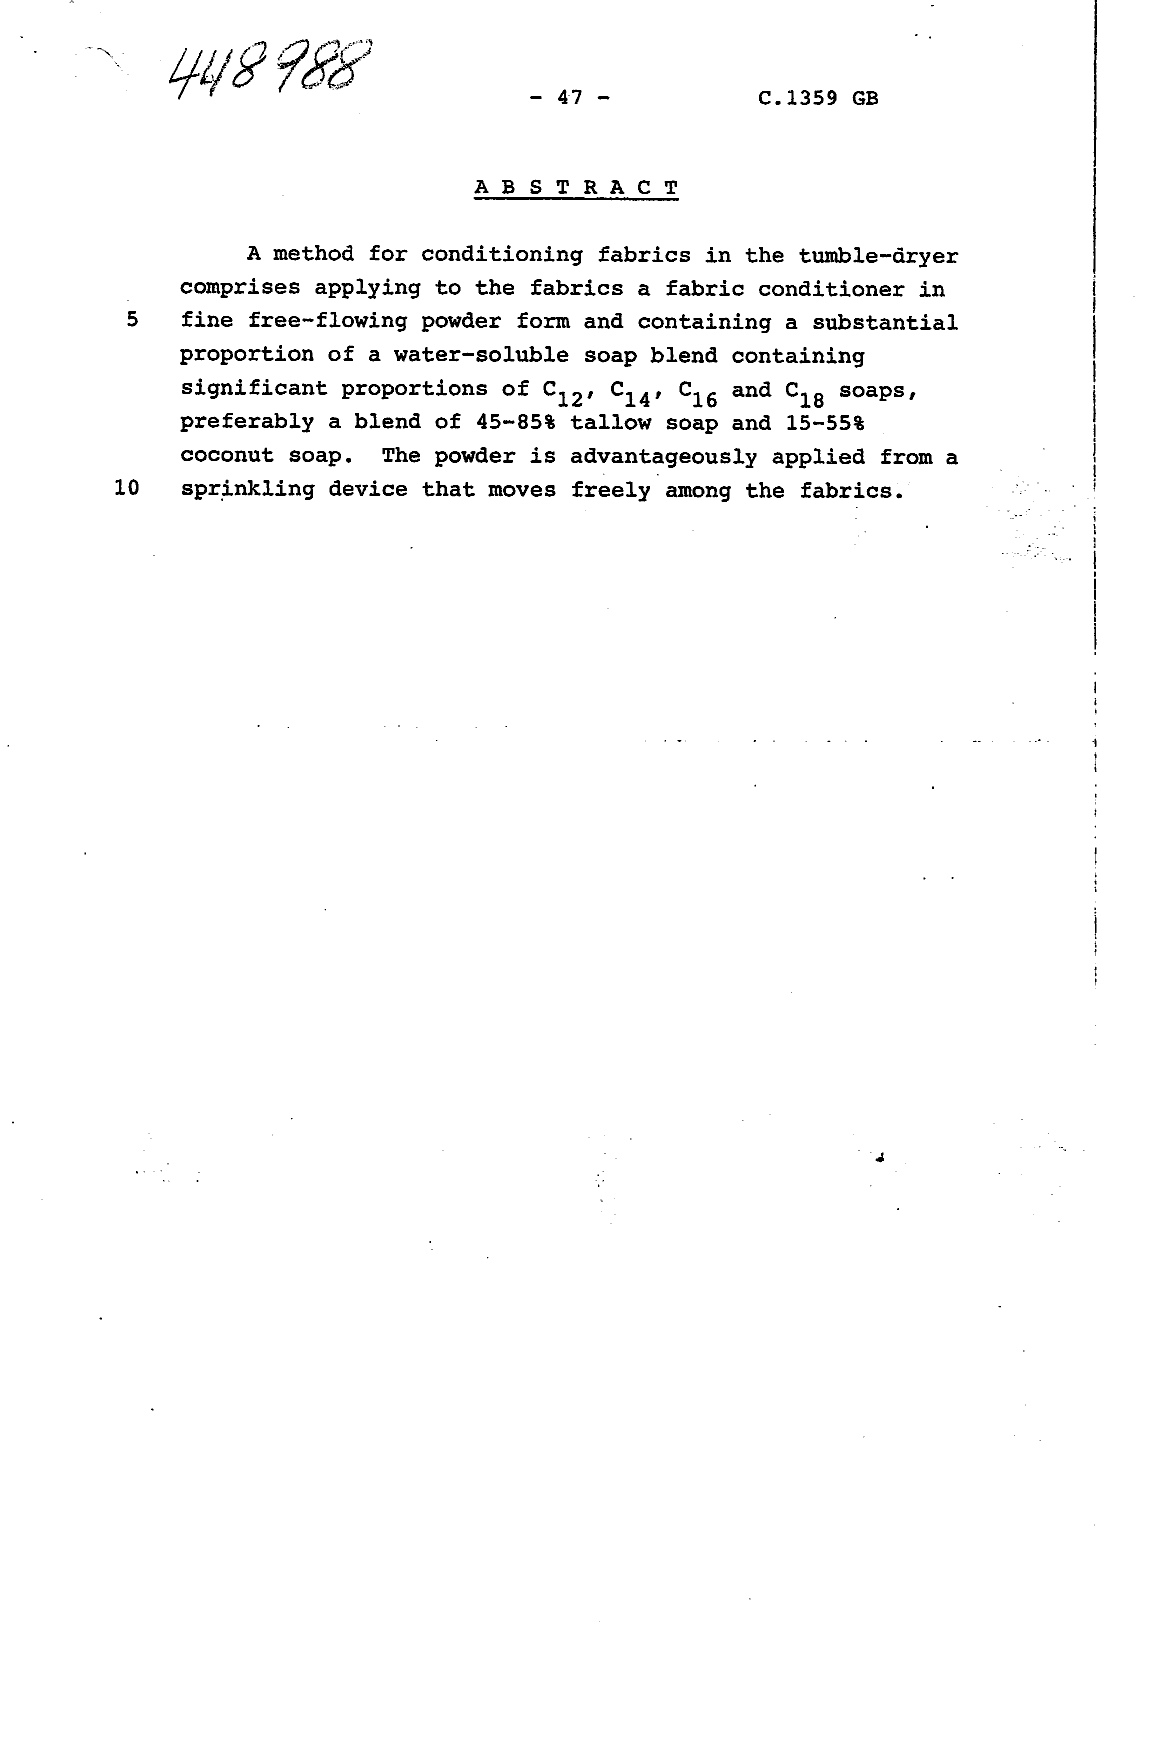 Document de brevet canadien 1250423. Abrégé 19930826. Image 1 de 1